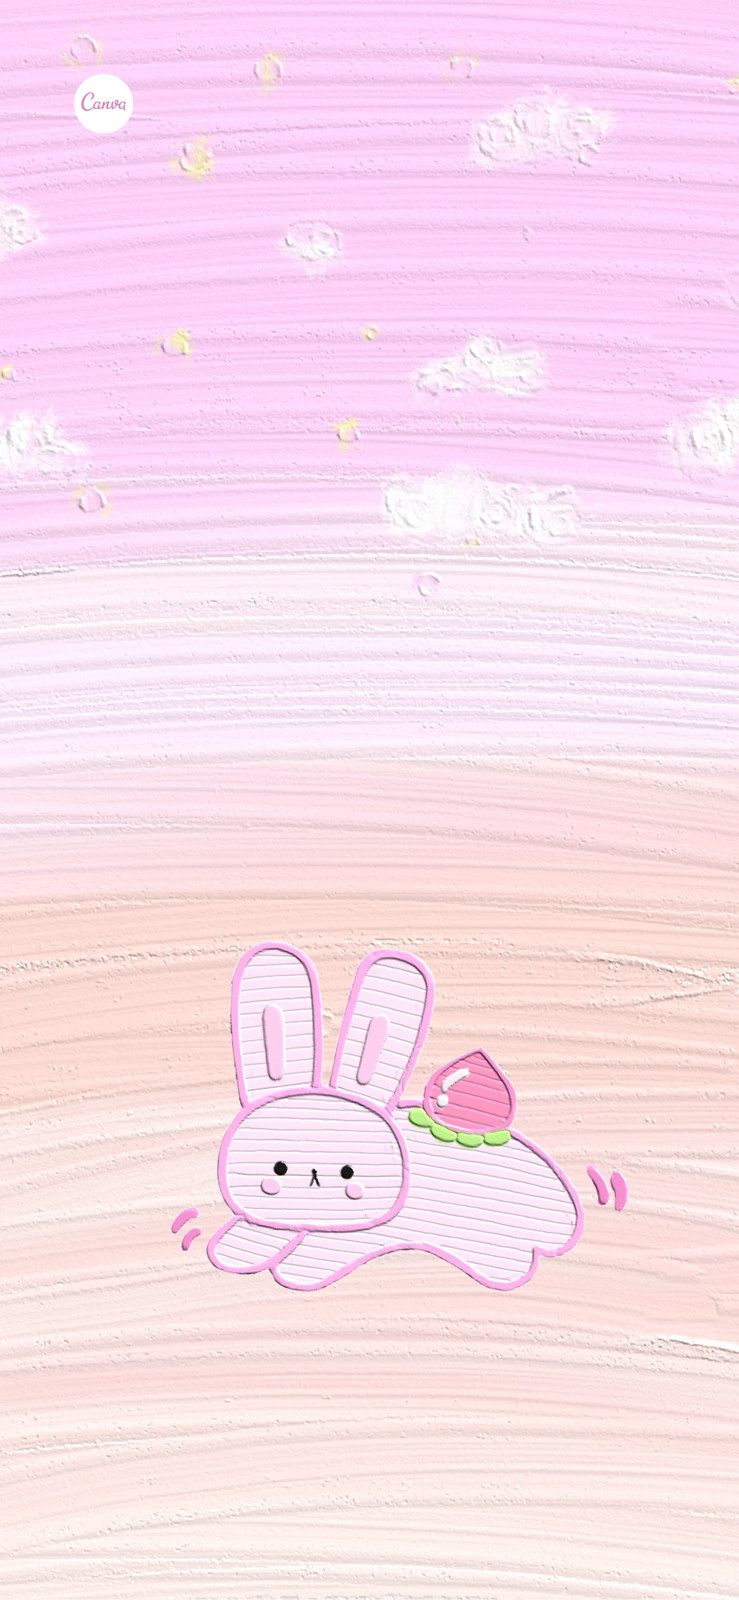 粉白色夏日渐变油画棒背景兔子贴纸清新分享新手机壁纸 模板 Canva可画